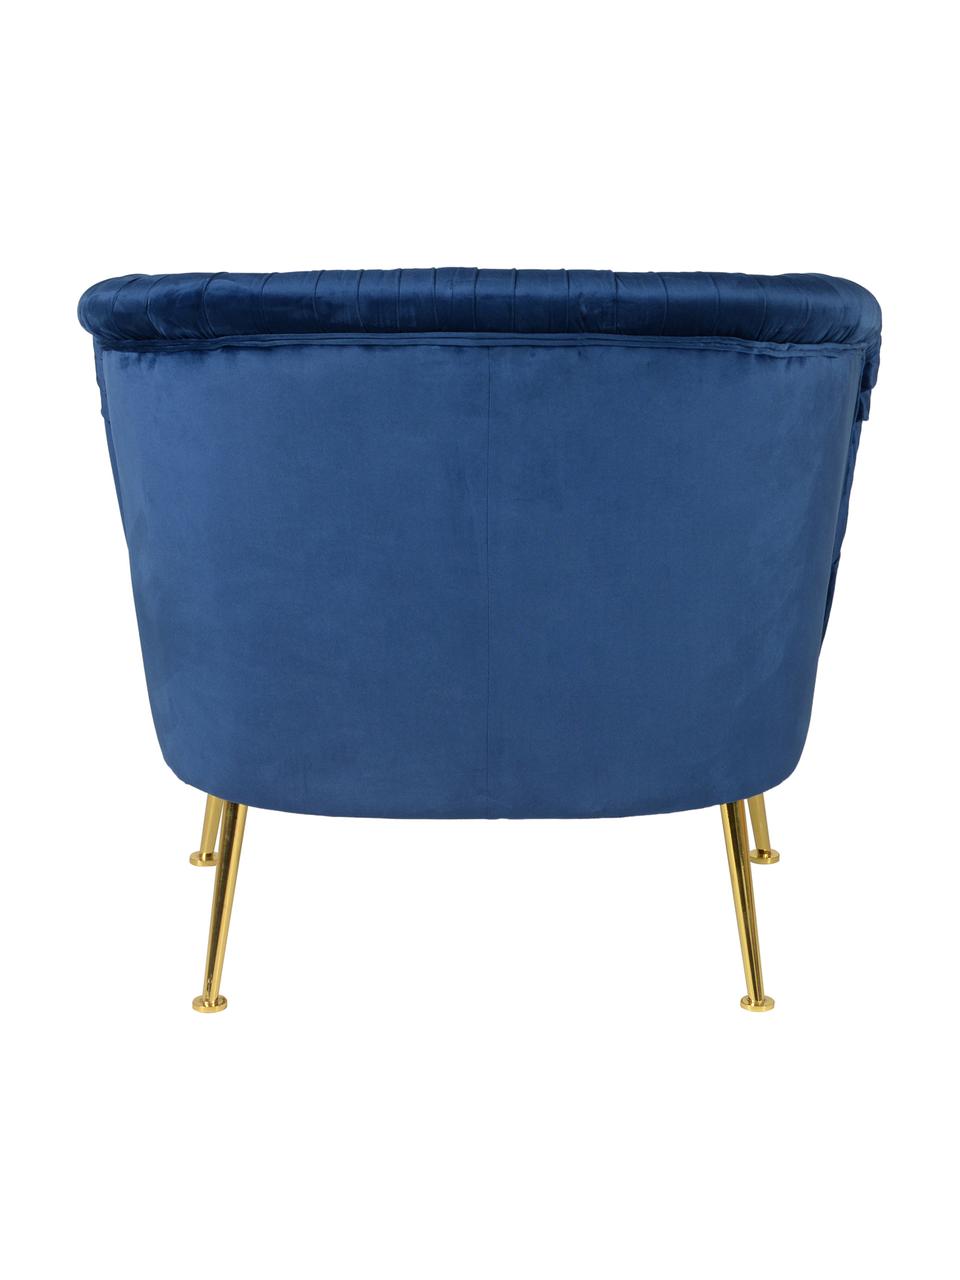 Fotel z aksamitu Diva, Tapicerka: aksamit poliestrowy 85 00, Nogi: metal lakierowany, Aksamit ciemny niebieski, S 73 x G 83 cm